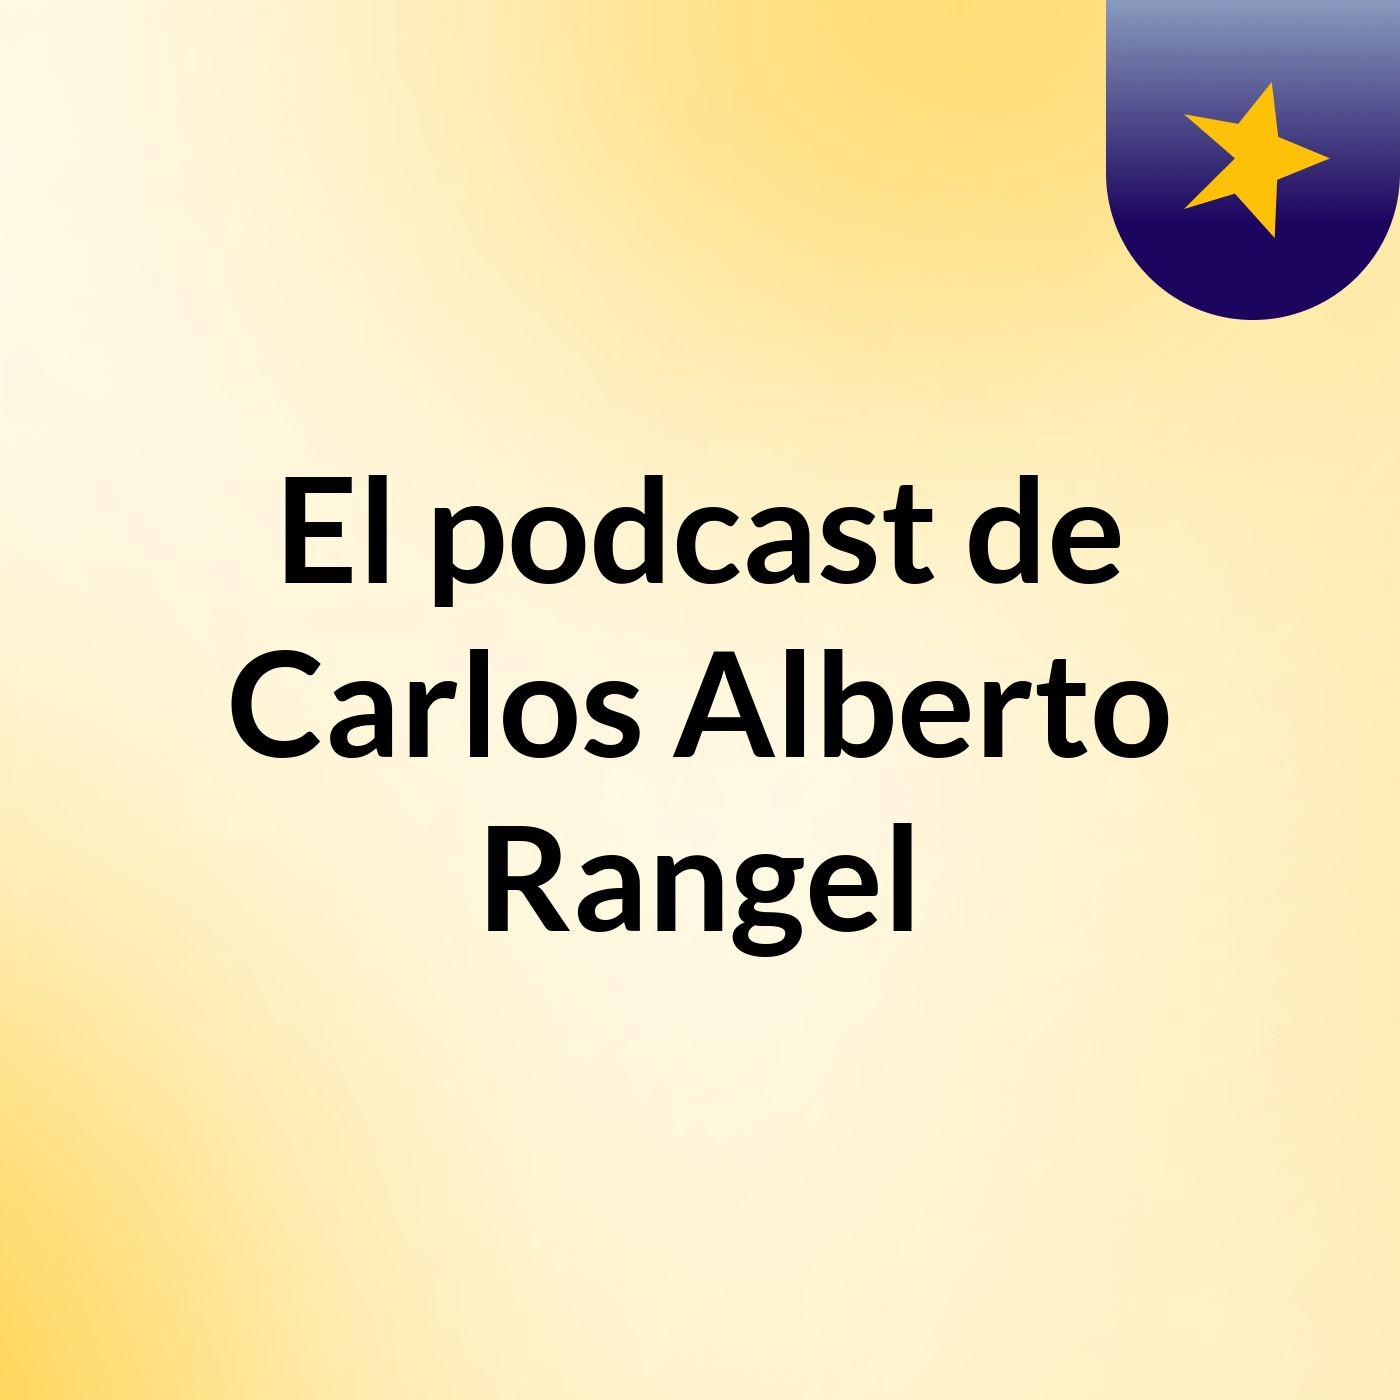 Episodio 8 - El podcast de Carlos Alberto Rangel